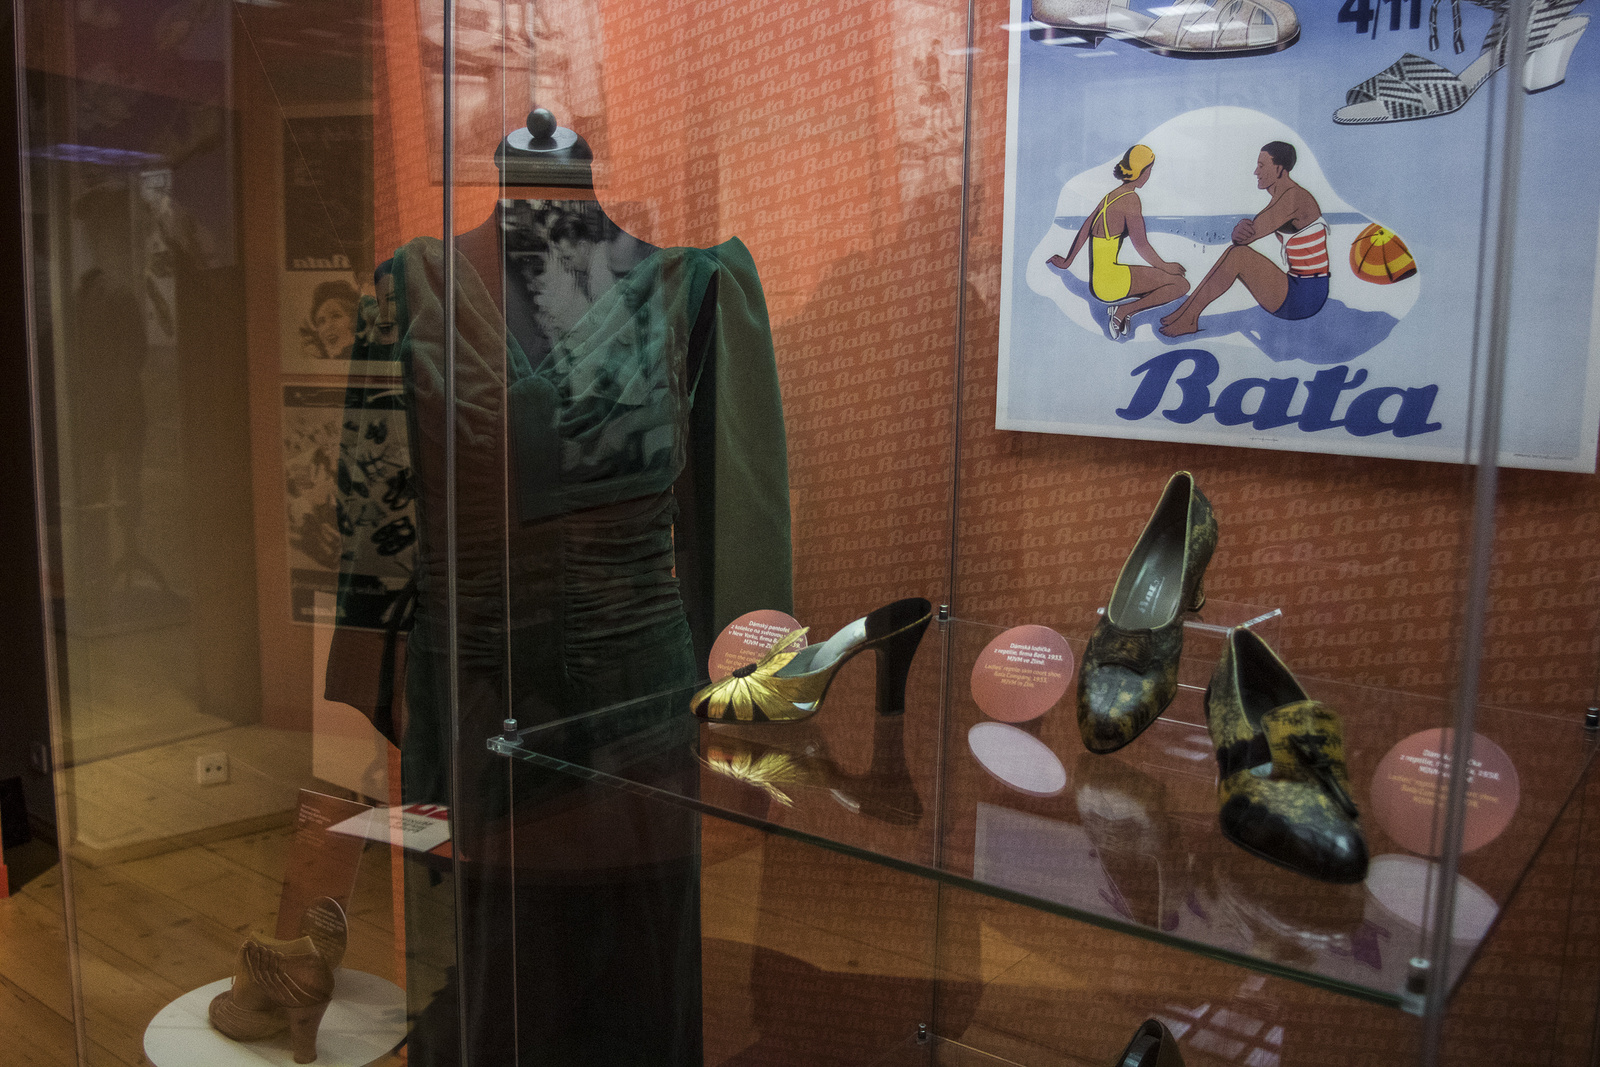 Meltonky, perka, séglovky. Výstava představuje Baťu i módu první republiky  - Pražský deník